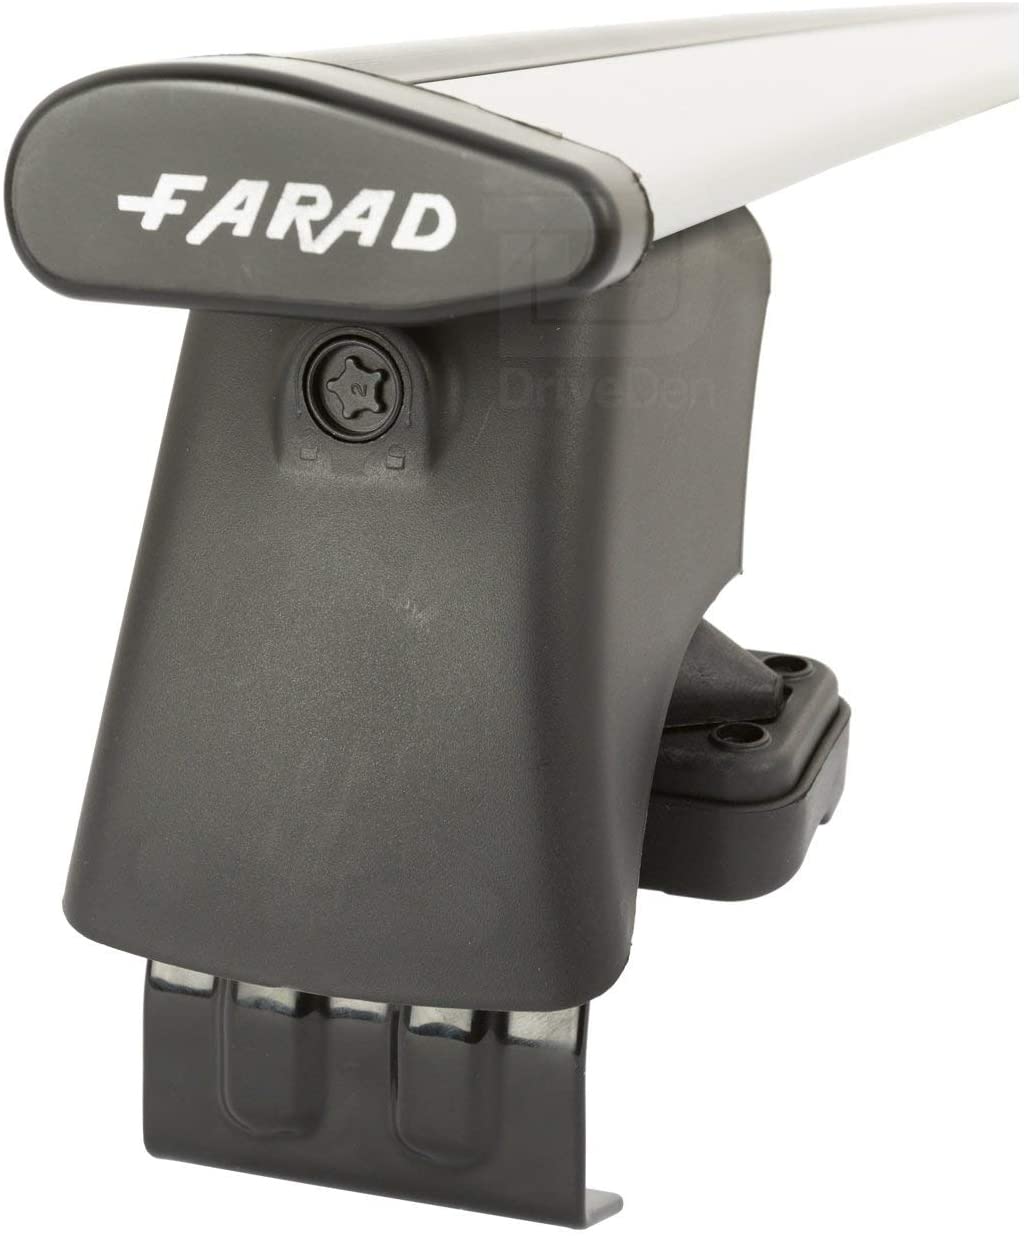 FARAD-Kit H2 per barre portatutto - Citroen C5 Aircross 2018> (senza corrimano)